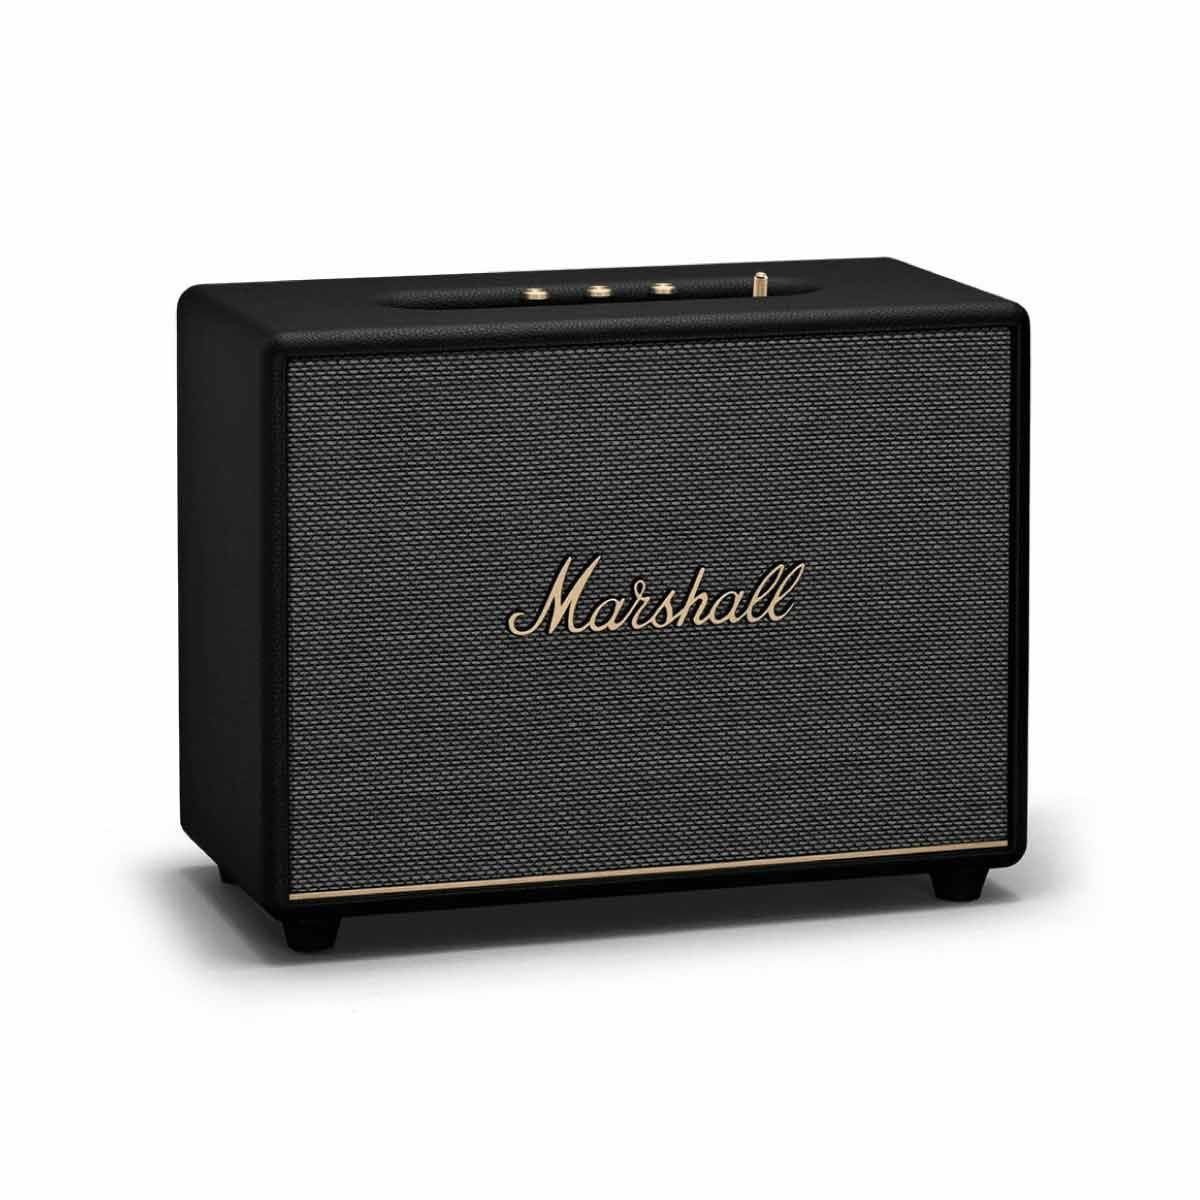 MARSHALL  ลำโพงไร้สาย Bluetooth Speaker รุ่น WOBURN III Bluetooth Speaker 150W